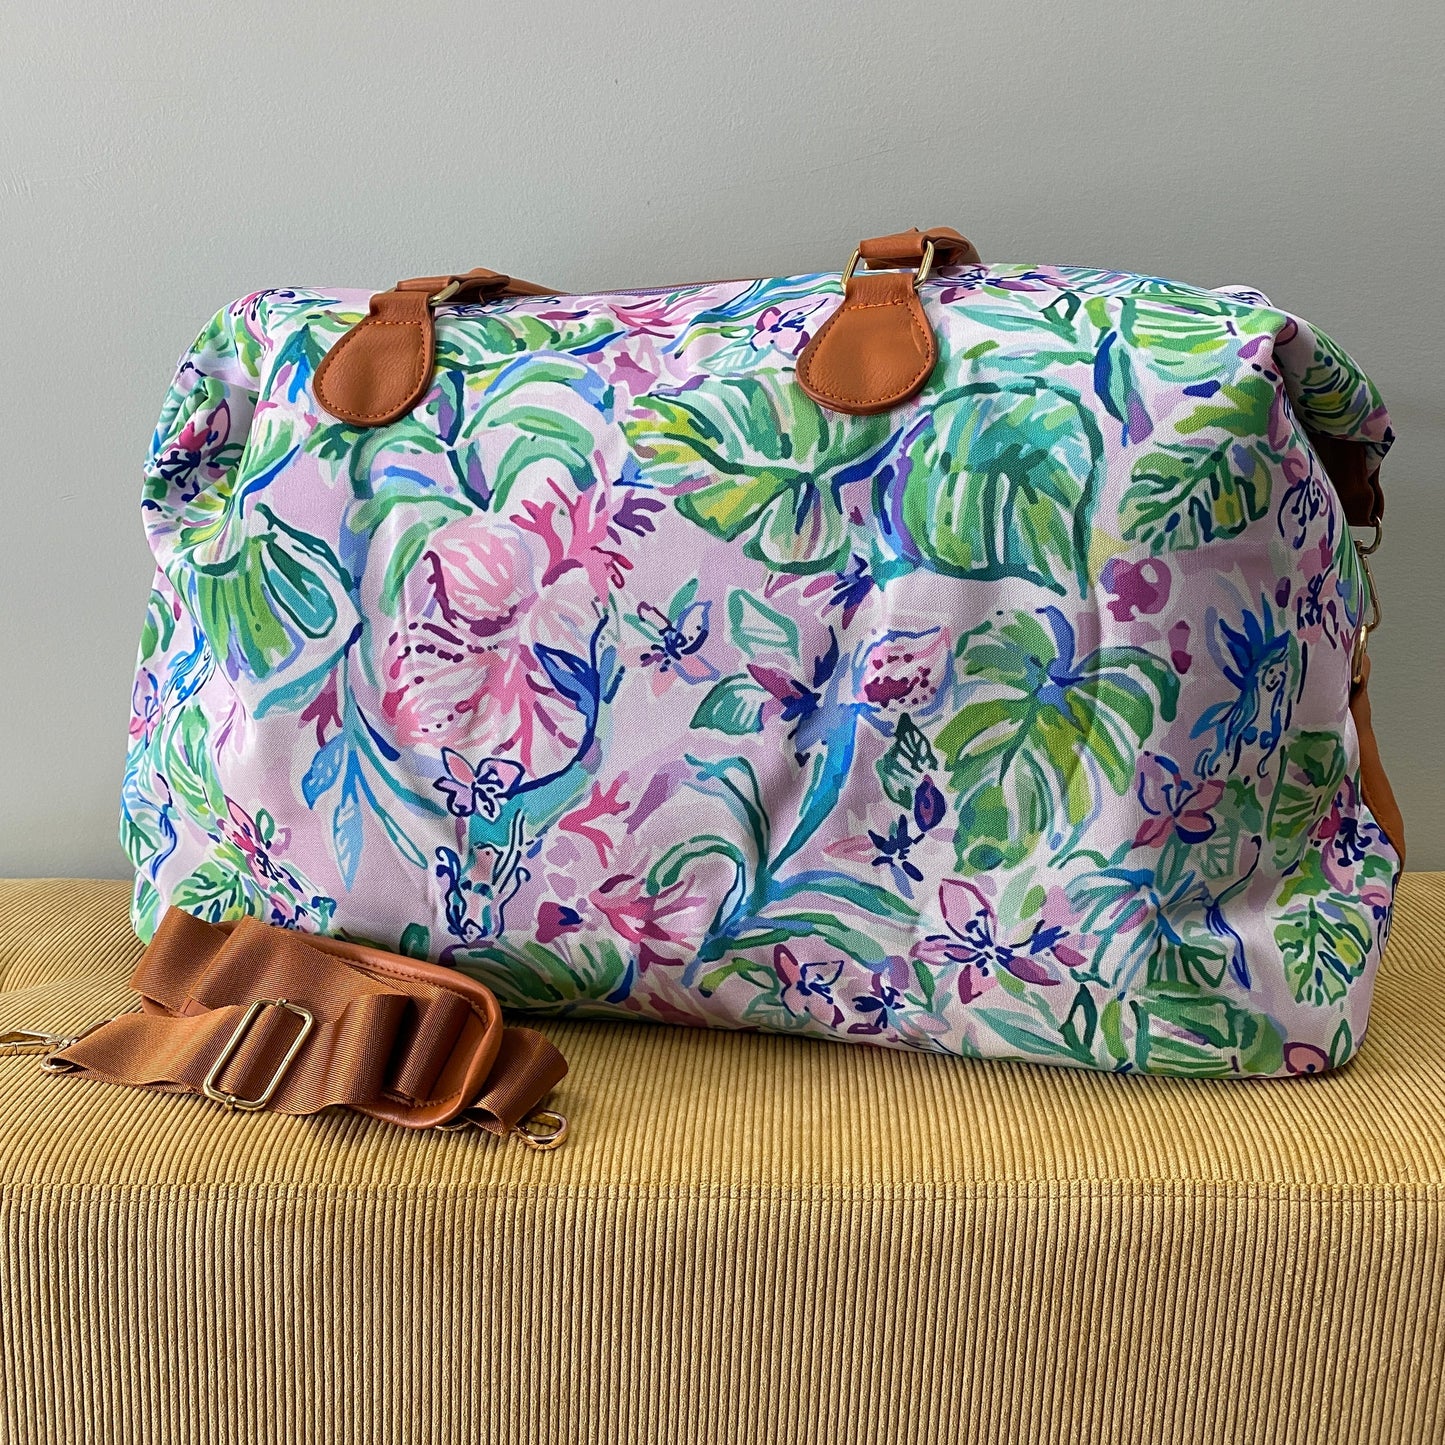 The Weekender Bag - Lavender Mermaid Palm